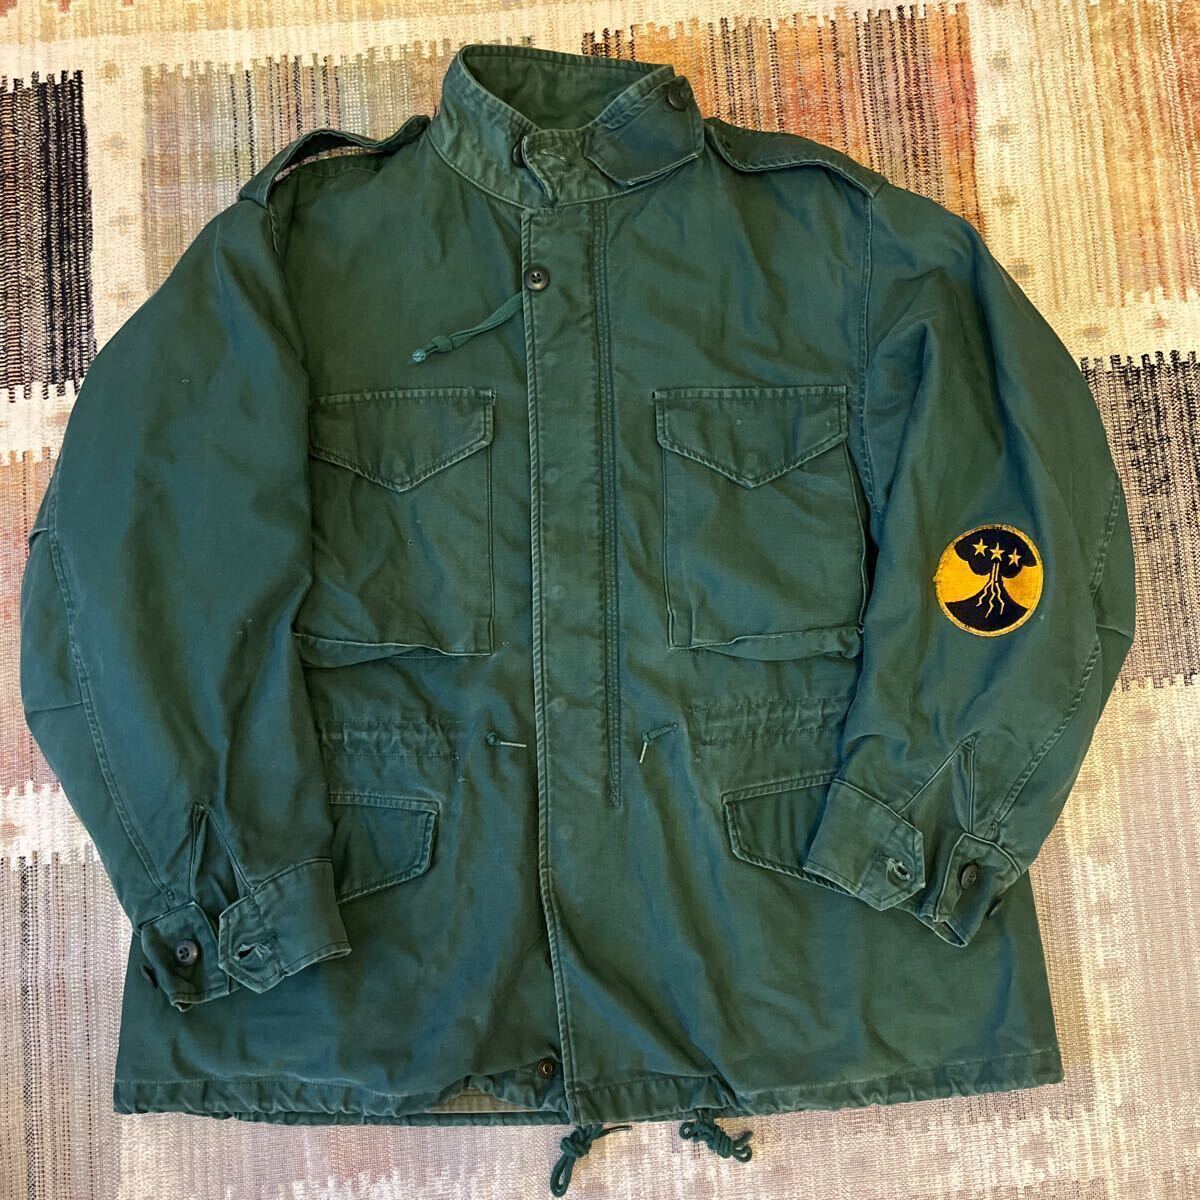  очень редкий vintage 60 годы US. ARMY M-51 aggressor jacket редкий Vintage 60s America армия UGG resa- милитари жакет 